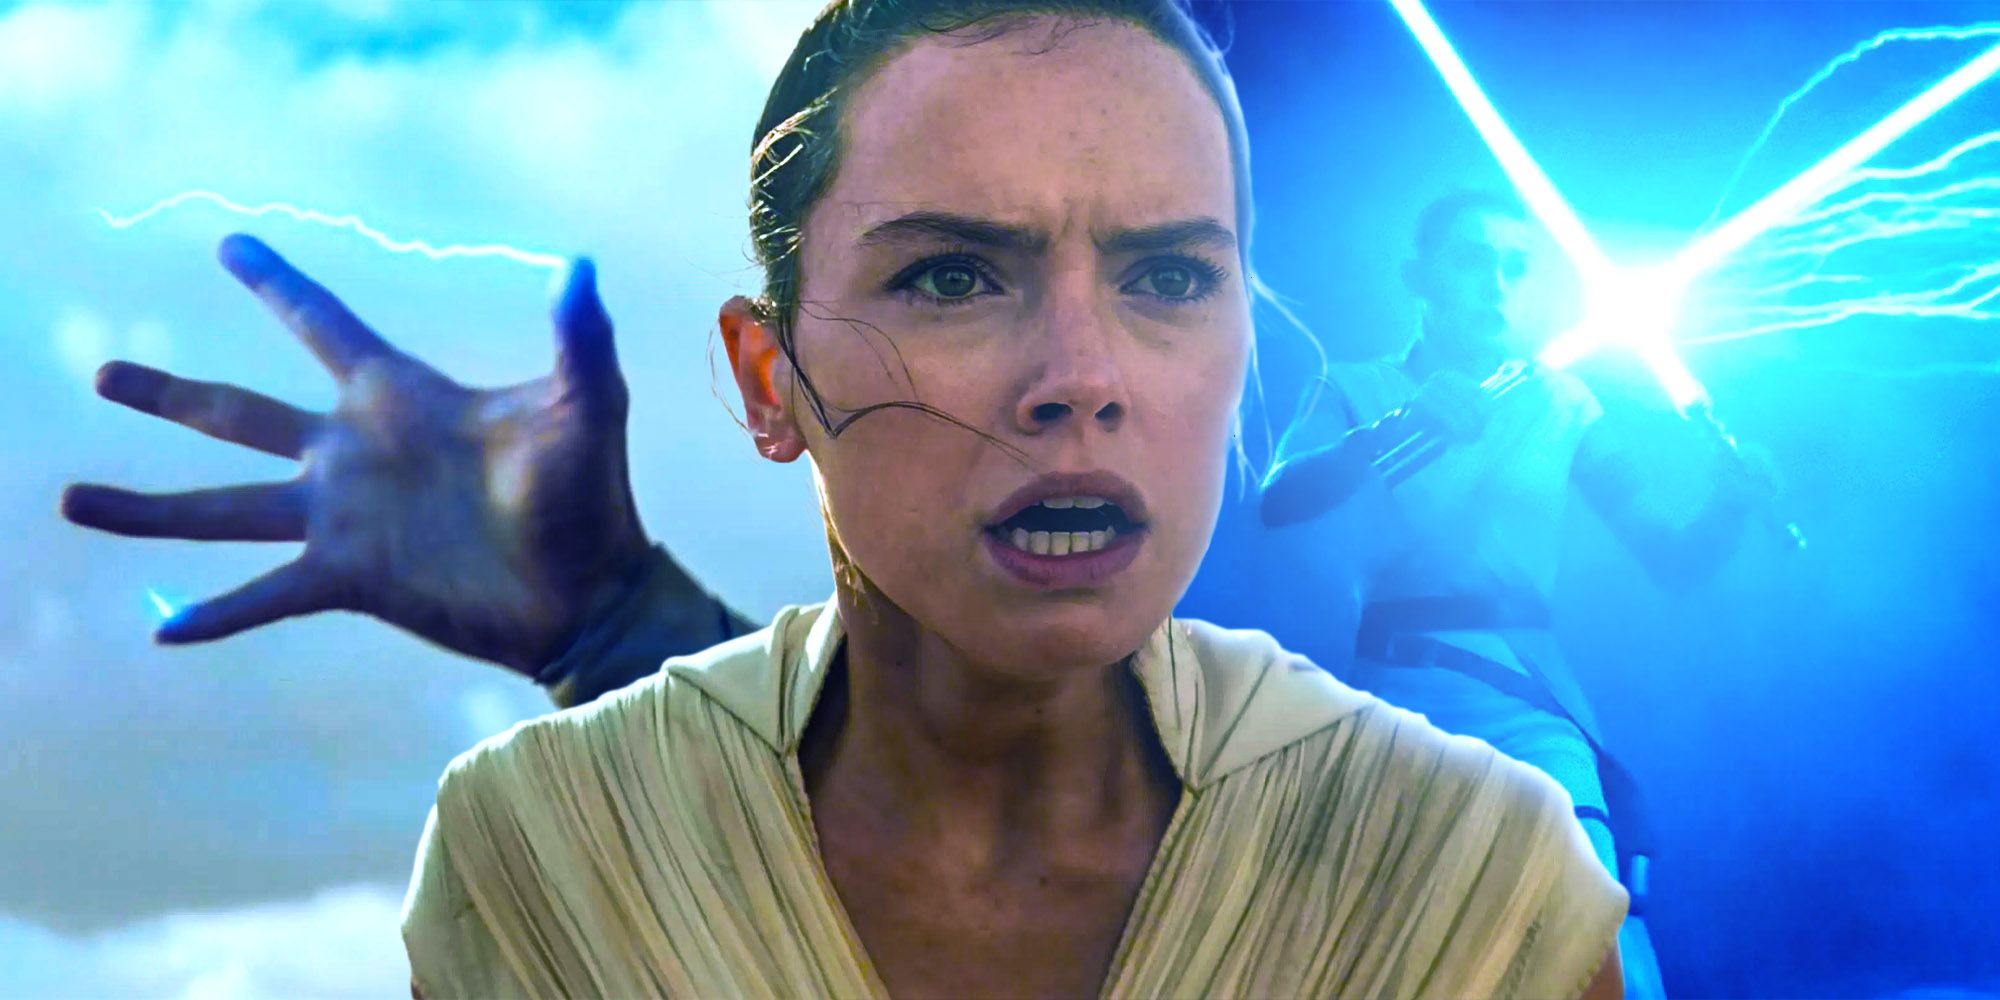 Increíble arte de Star Wars captura el poder de Rey Skywalker